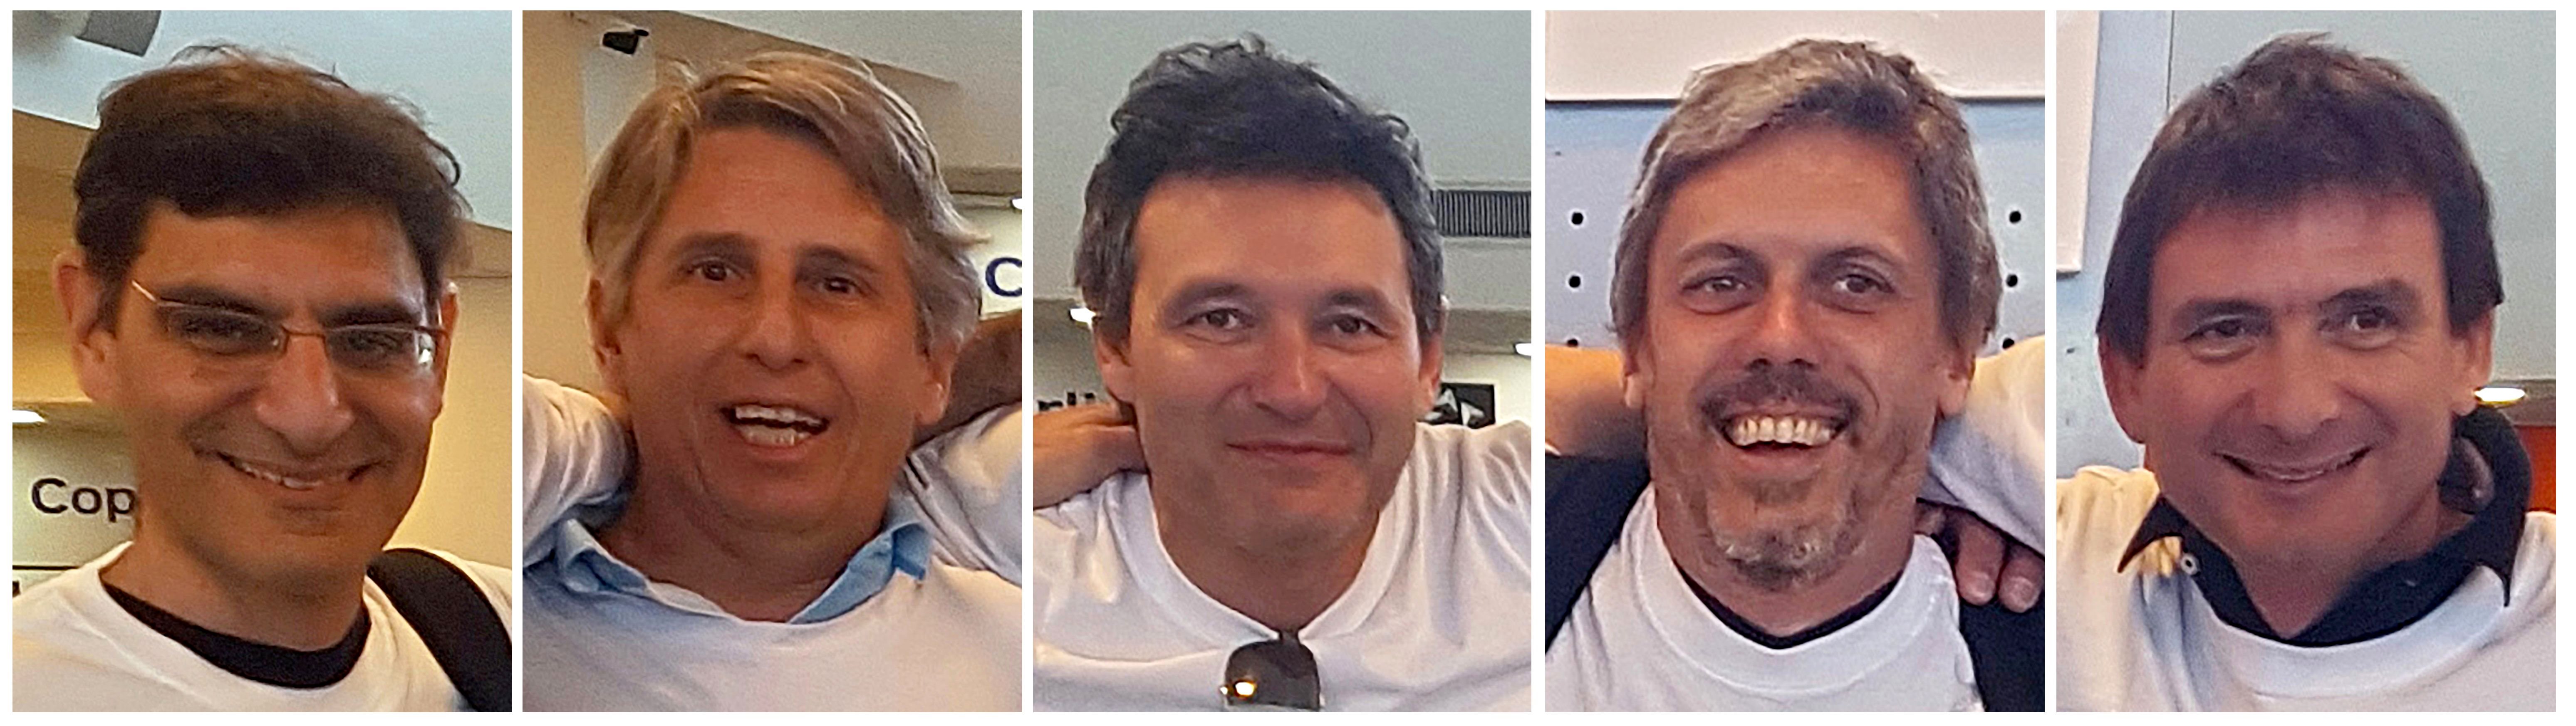 Los cinco fallecidos argentinos en el atentado en Nueva York.